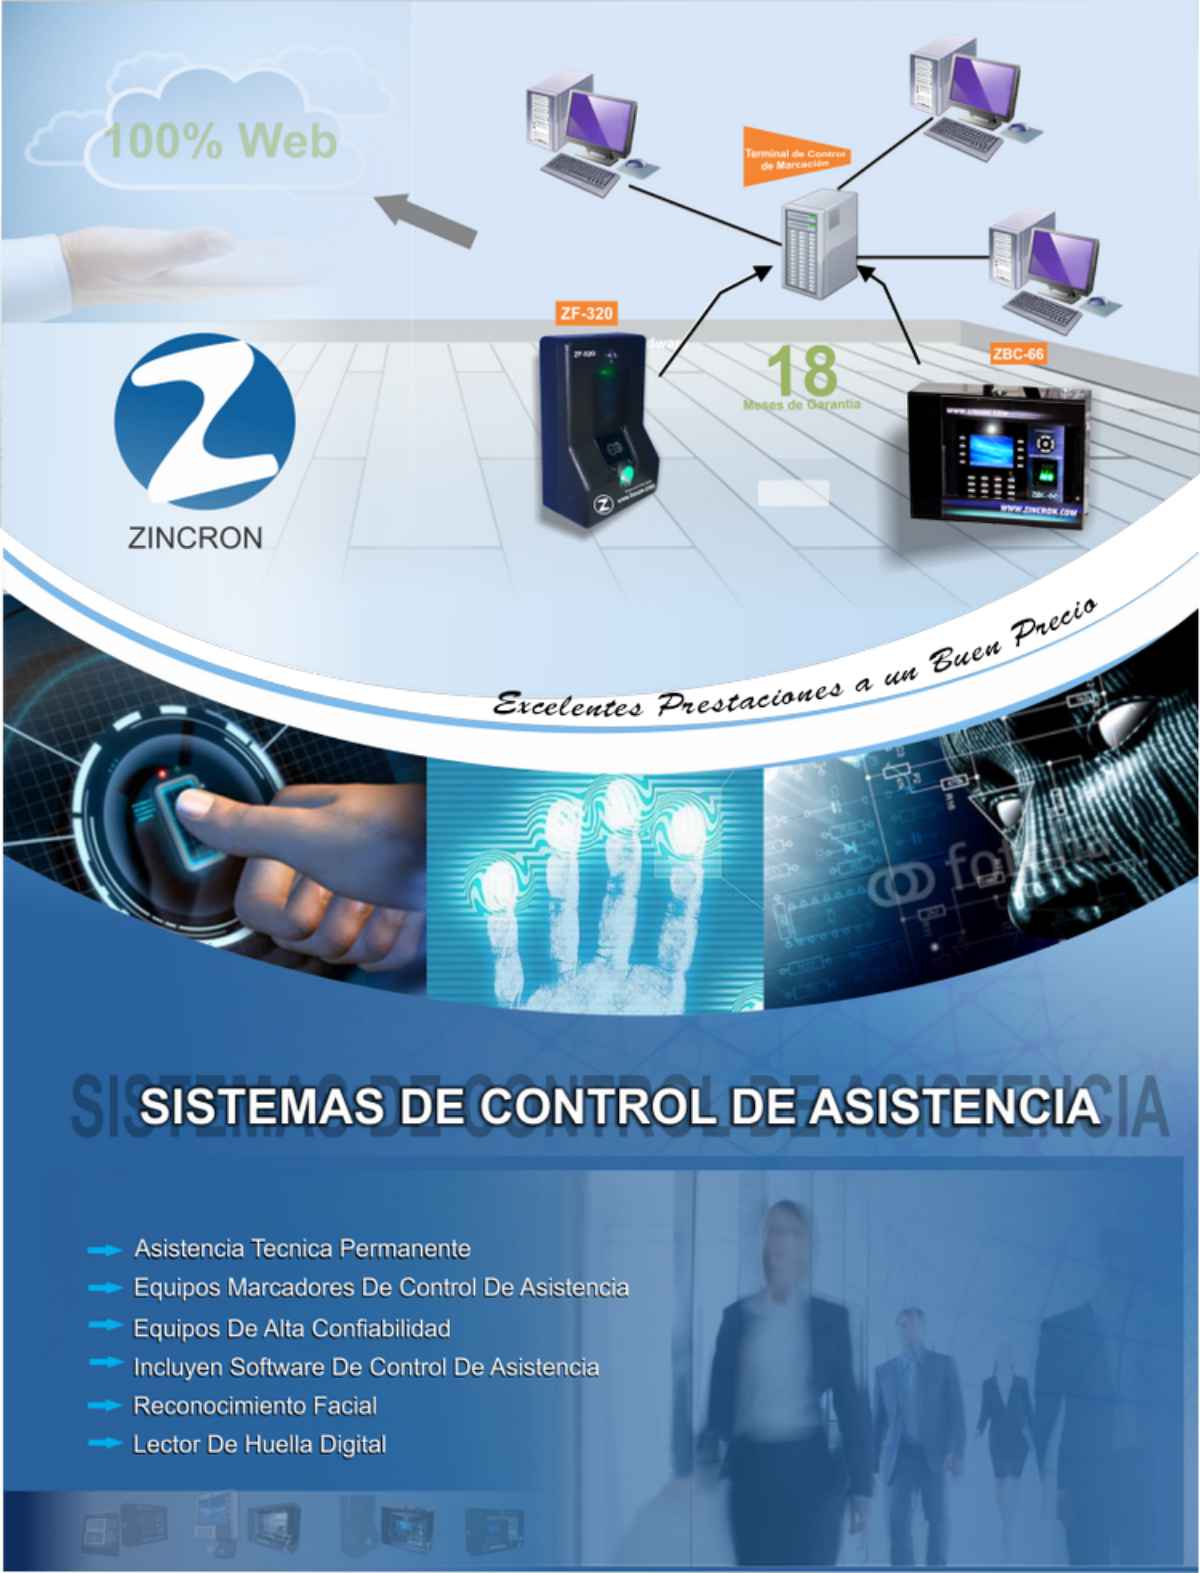 Zincron Software de Control de Asistencia